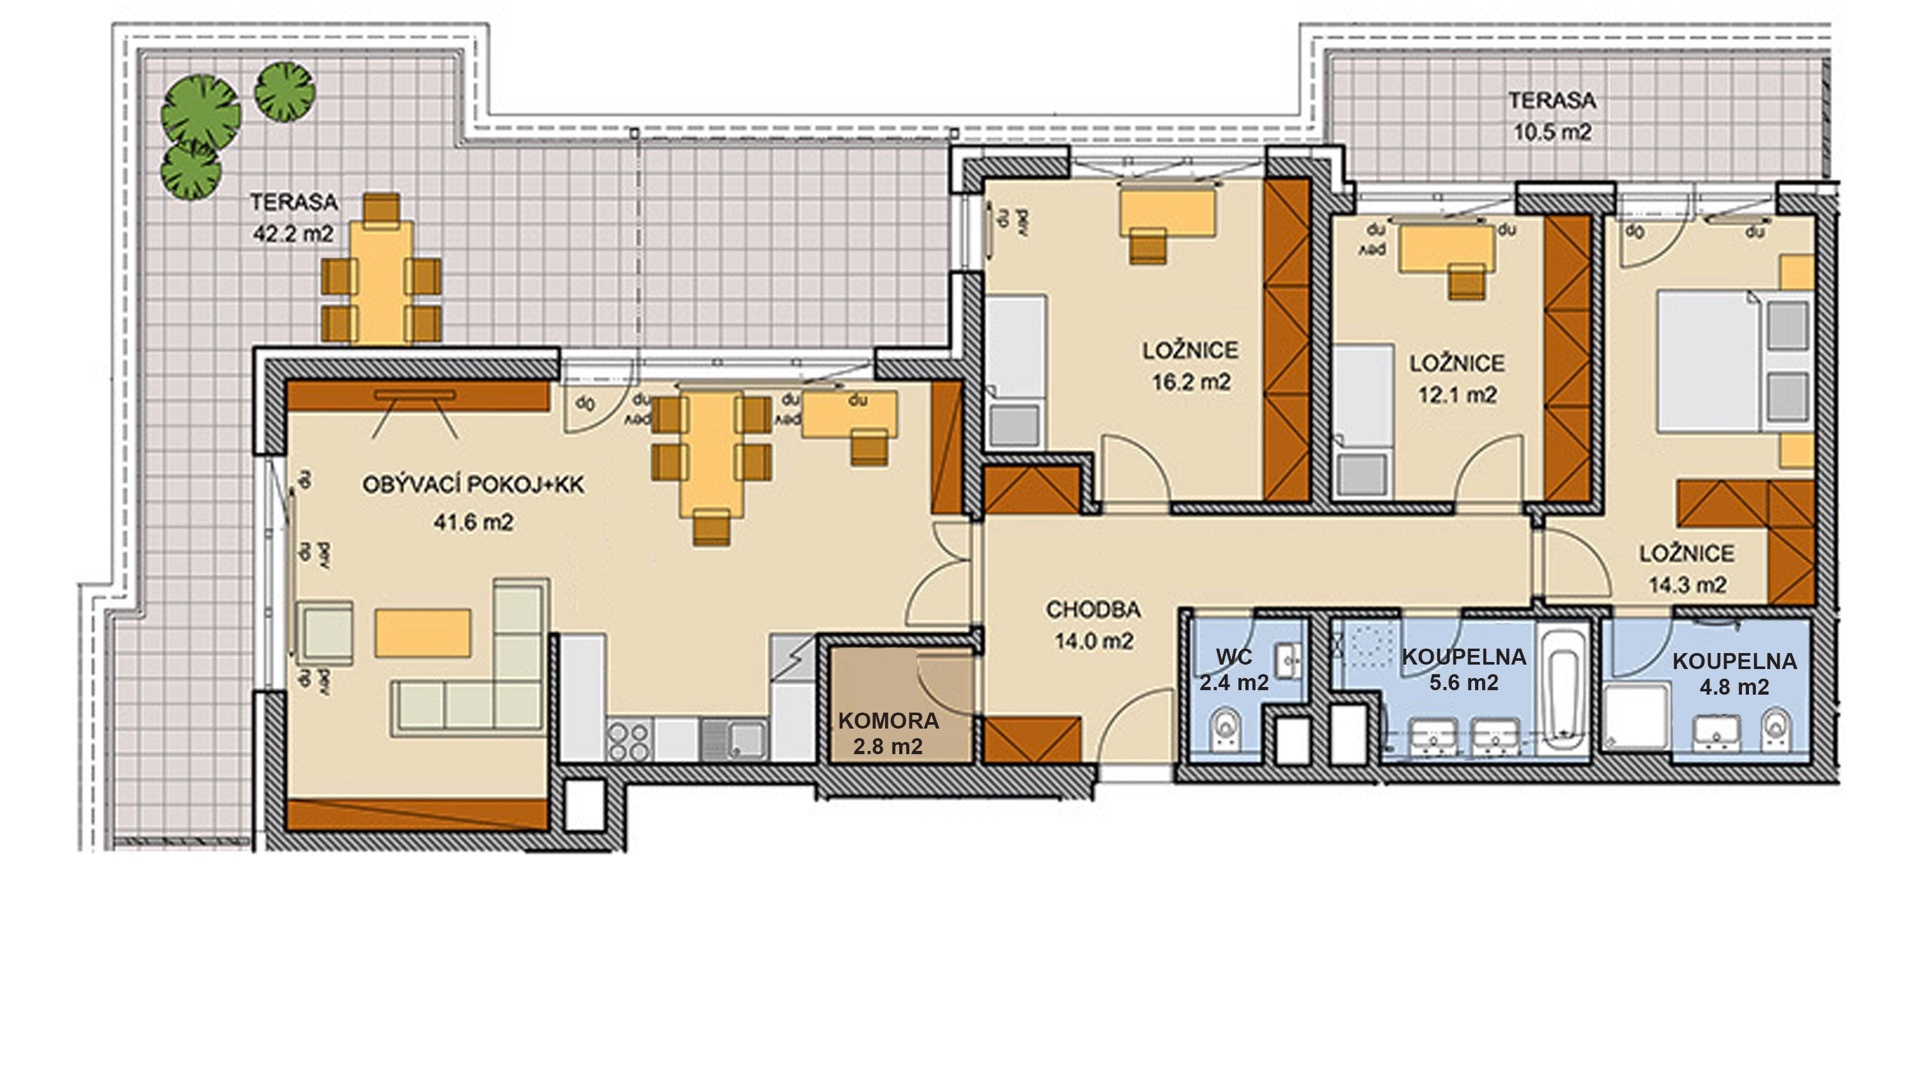 Prodej bytu 4+kk, 120 m², 2 terasy 52 m², 2 koupelny, garážové stání, Praha - Dolní Měcholupy